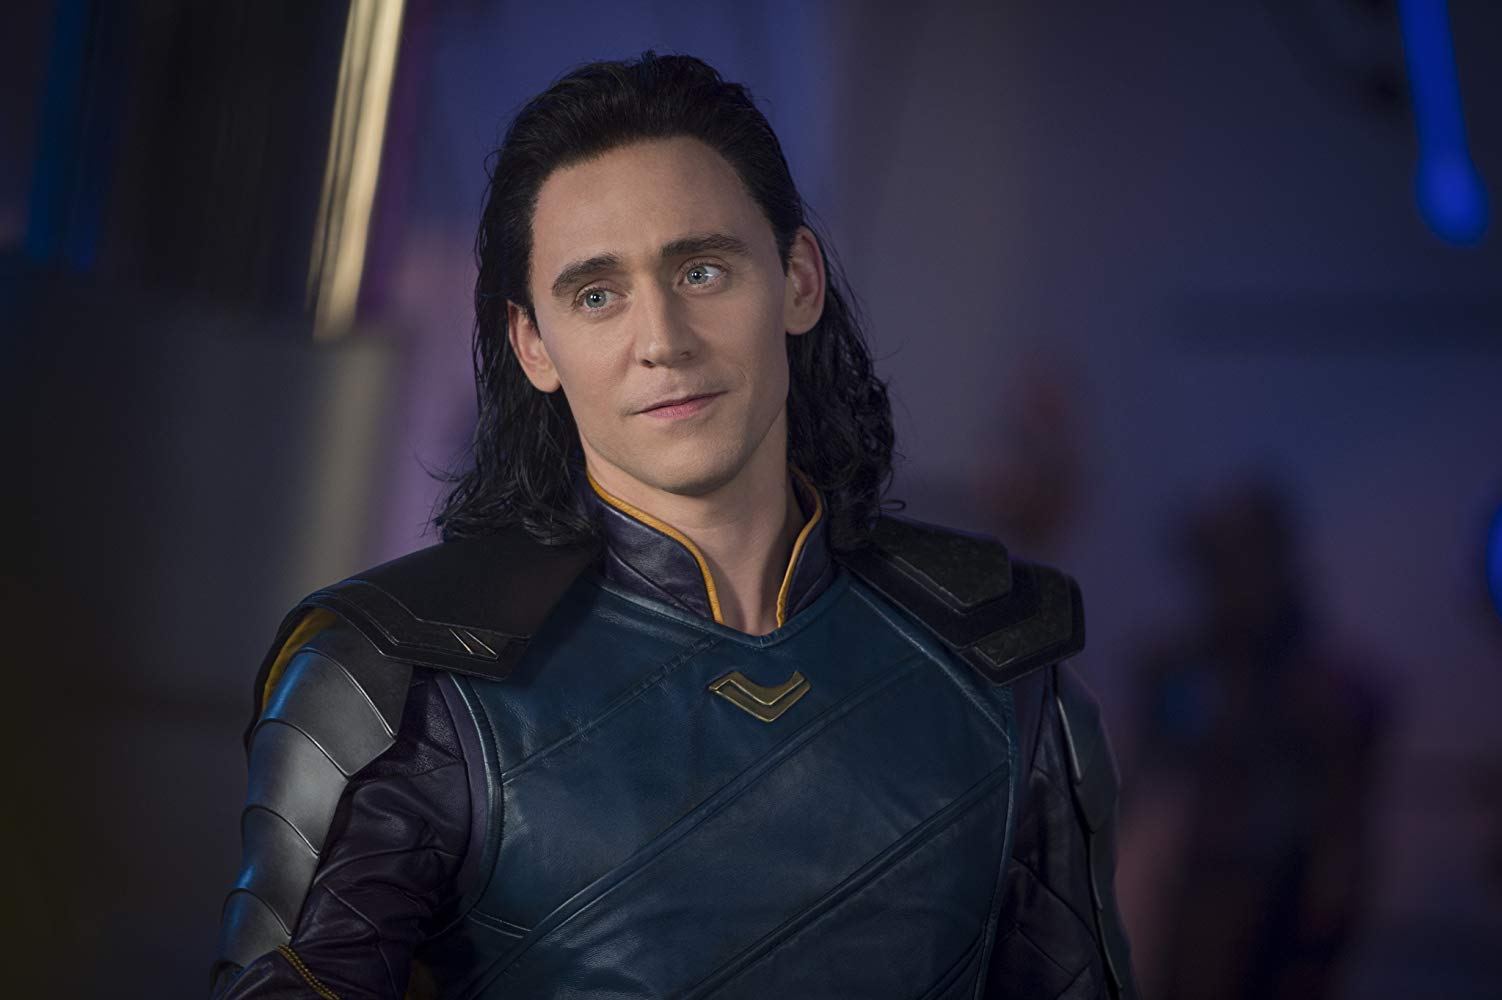 Encontrada a prova de que Loki foi controlado por Thanos em Os Vingadores